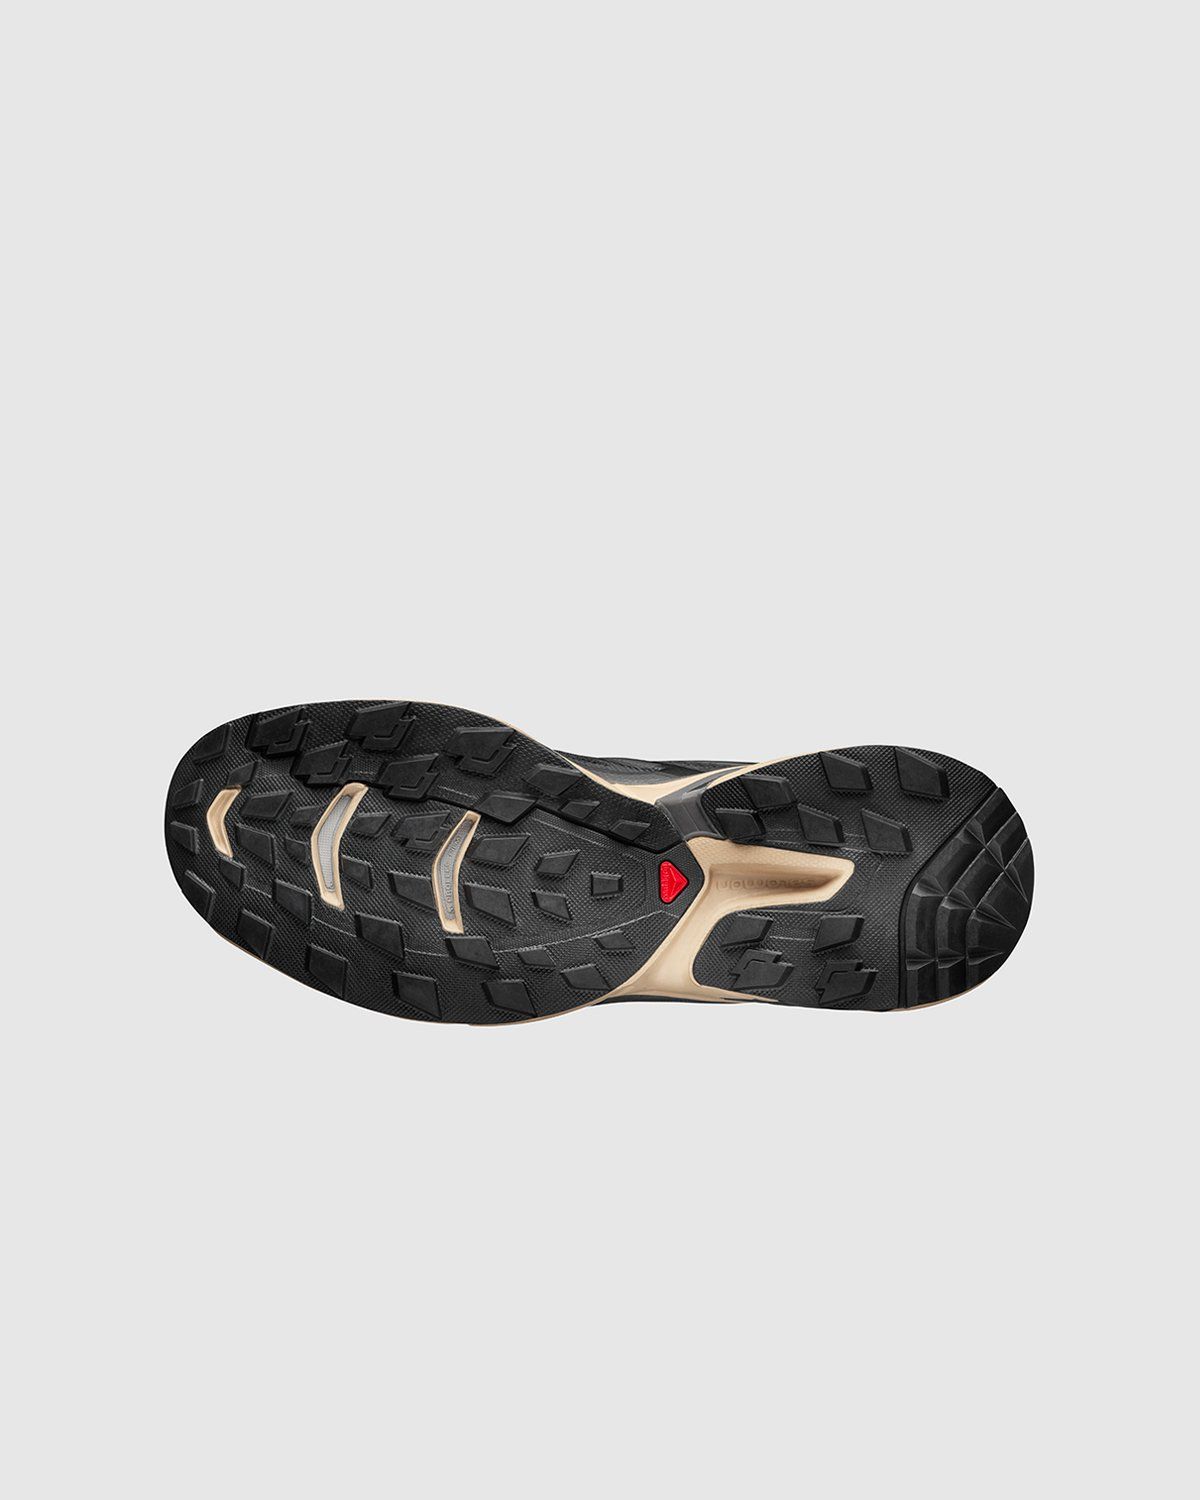 Salomon – XT-WINGS 2 ADVANCED Black/Safari/Magnet - Low Top Sneakers - Black - Image 5